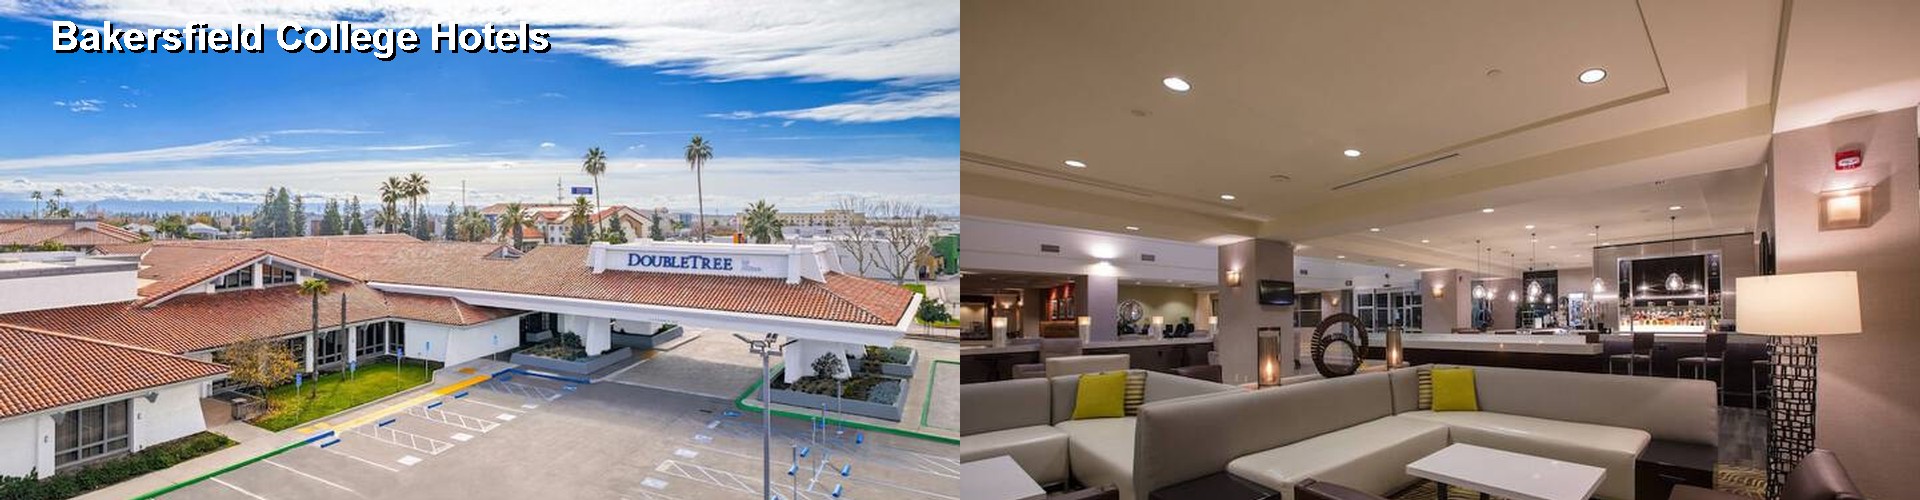 5 Best Hotels near Bakersfield College